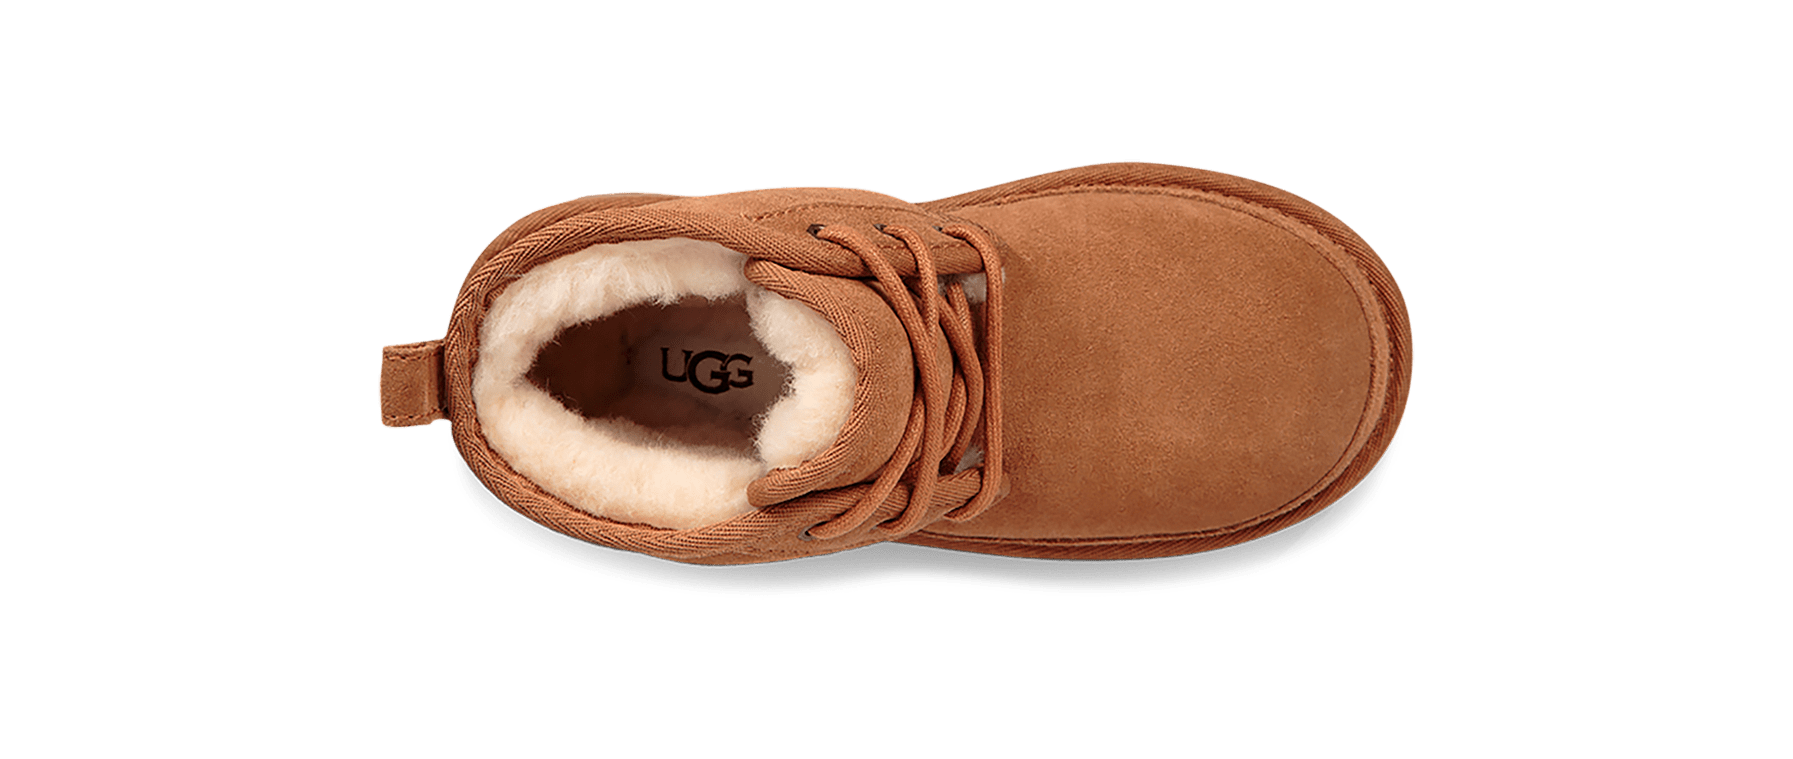 UGG FOOTWEAR UGG Neumel II Boot - Kid's